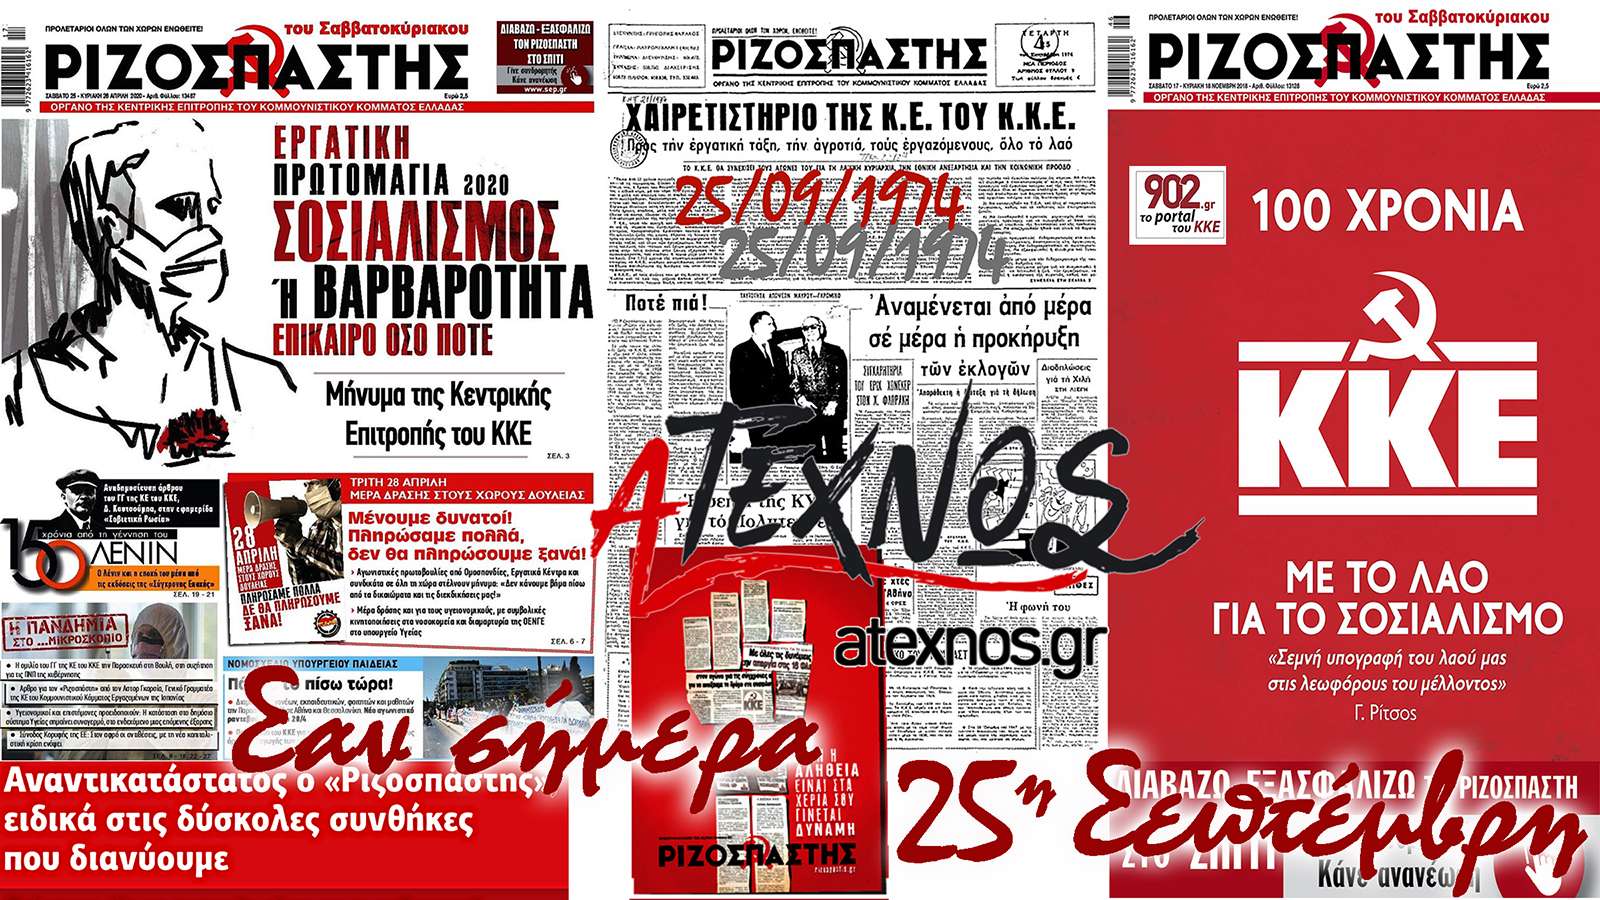 Τι έγινε στον κόσμο και στην Ελλάδα σαν σήμερα 25 Σεπτεμβρίου;